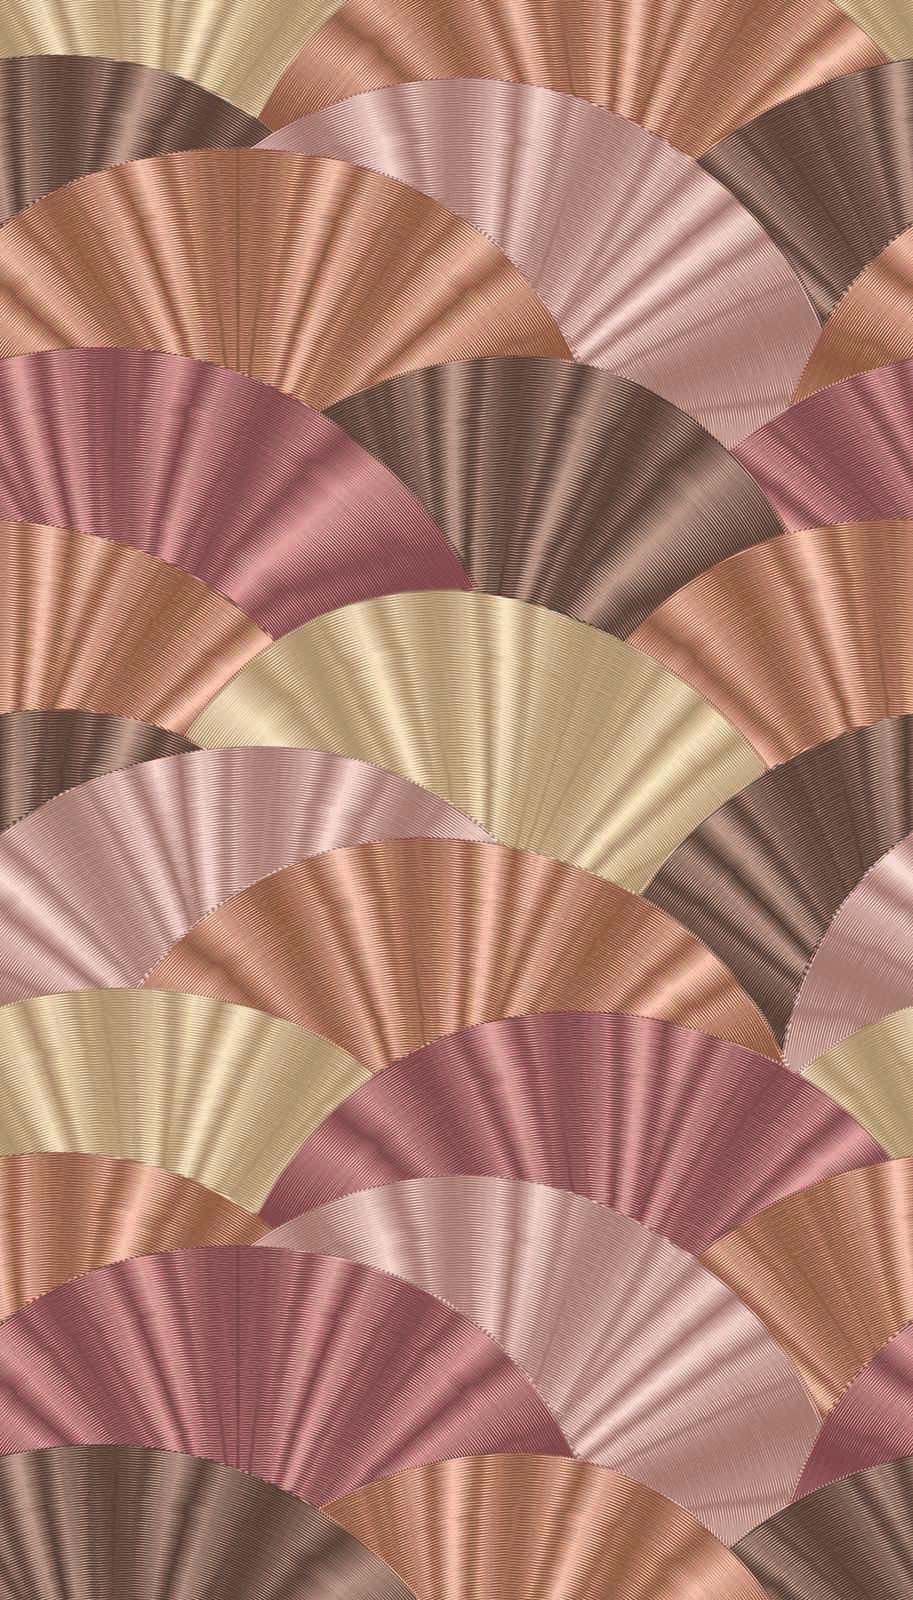             Vliesbehang met waaiermotief in zachte tinten - roze, crème, beige
        